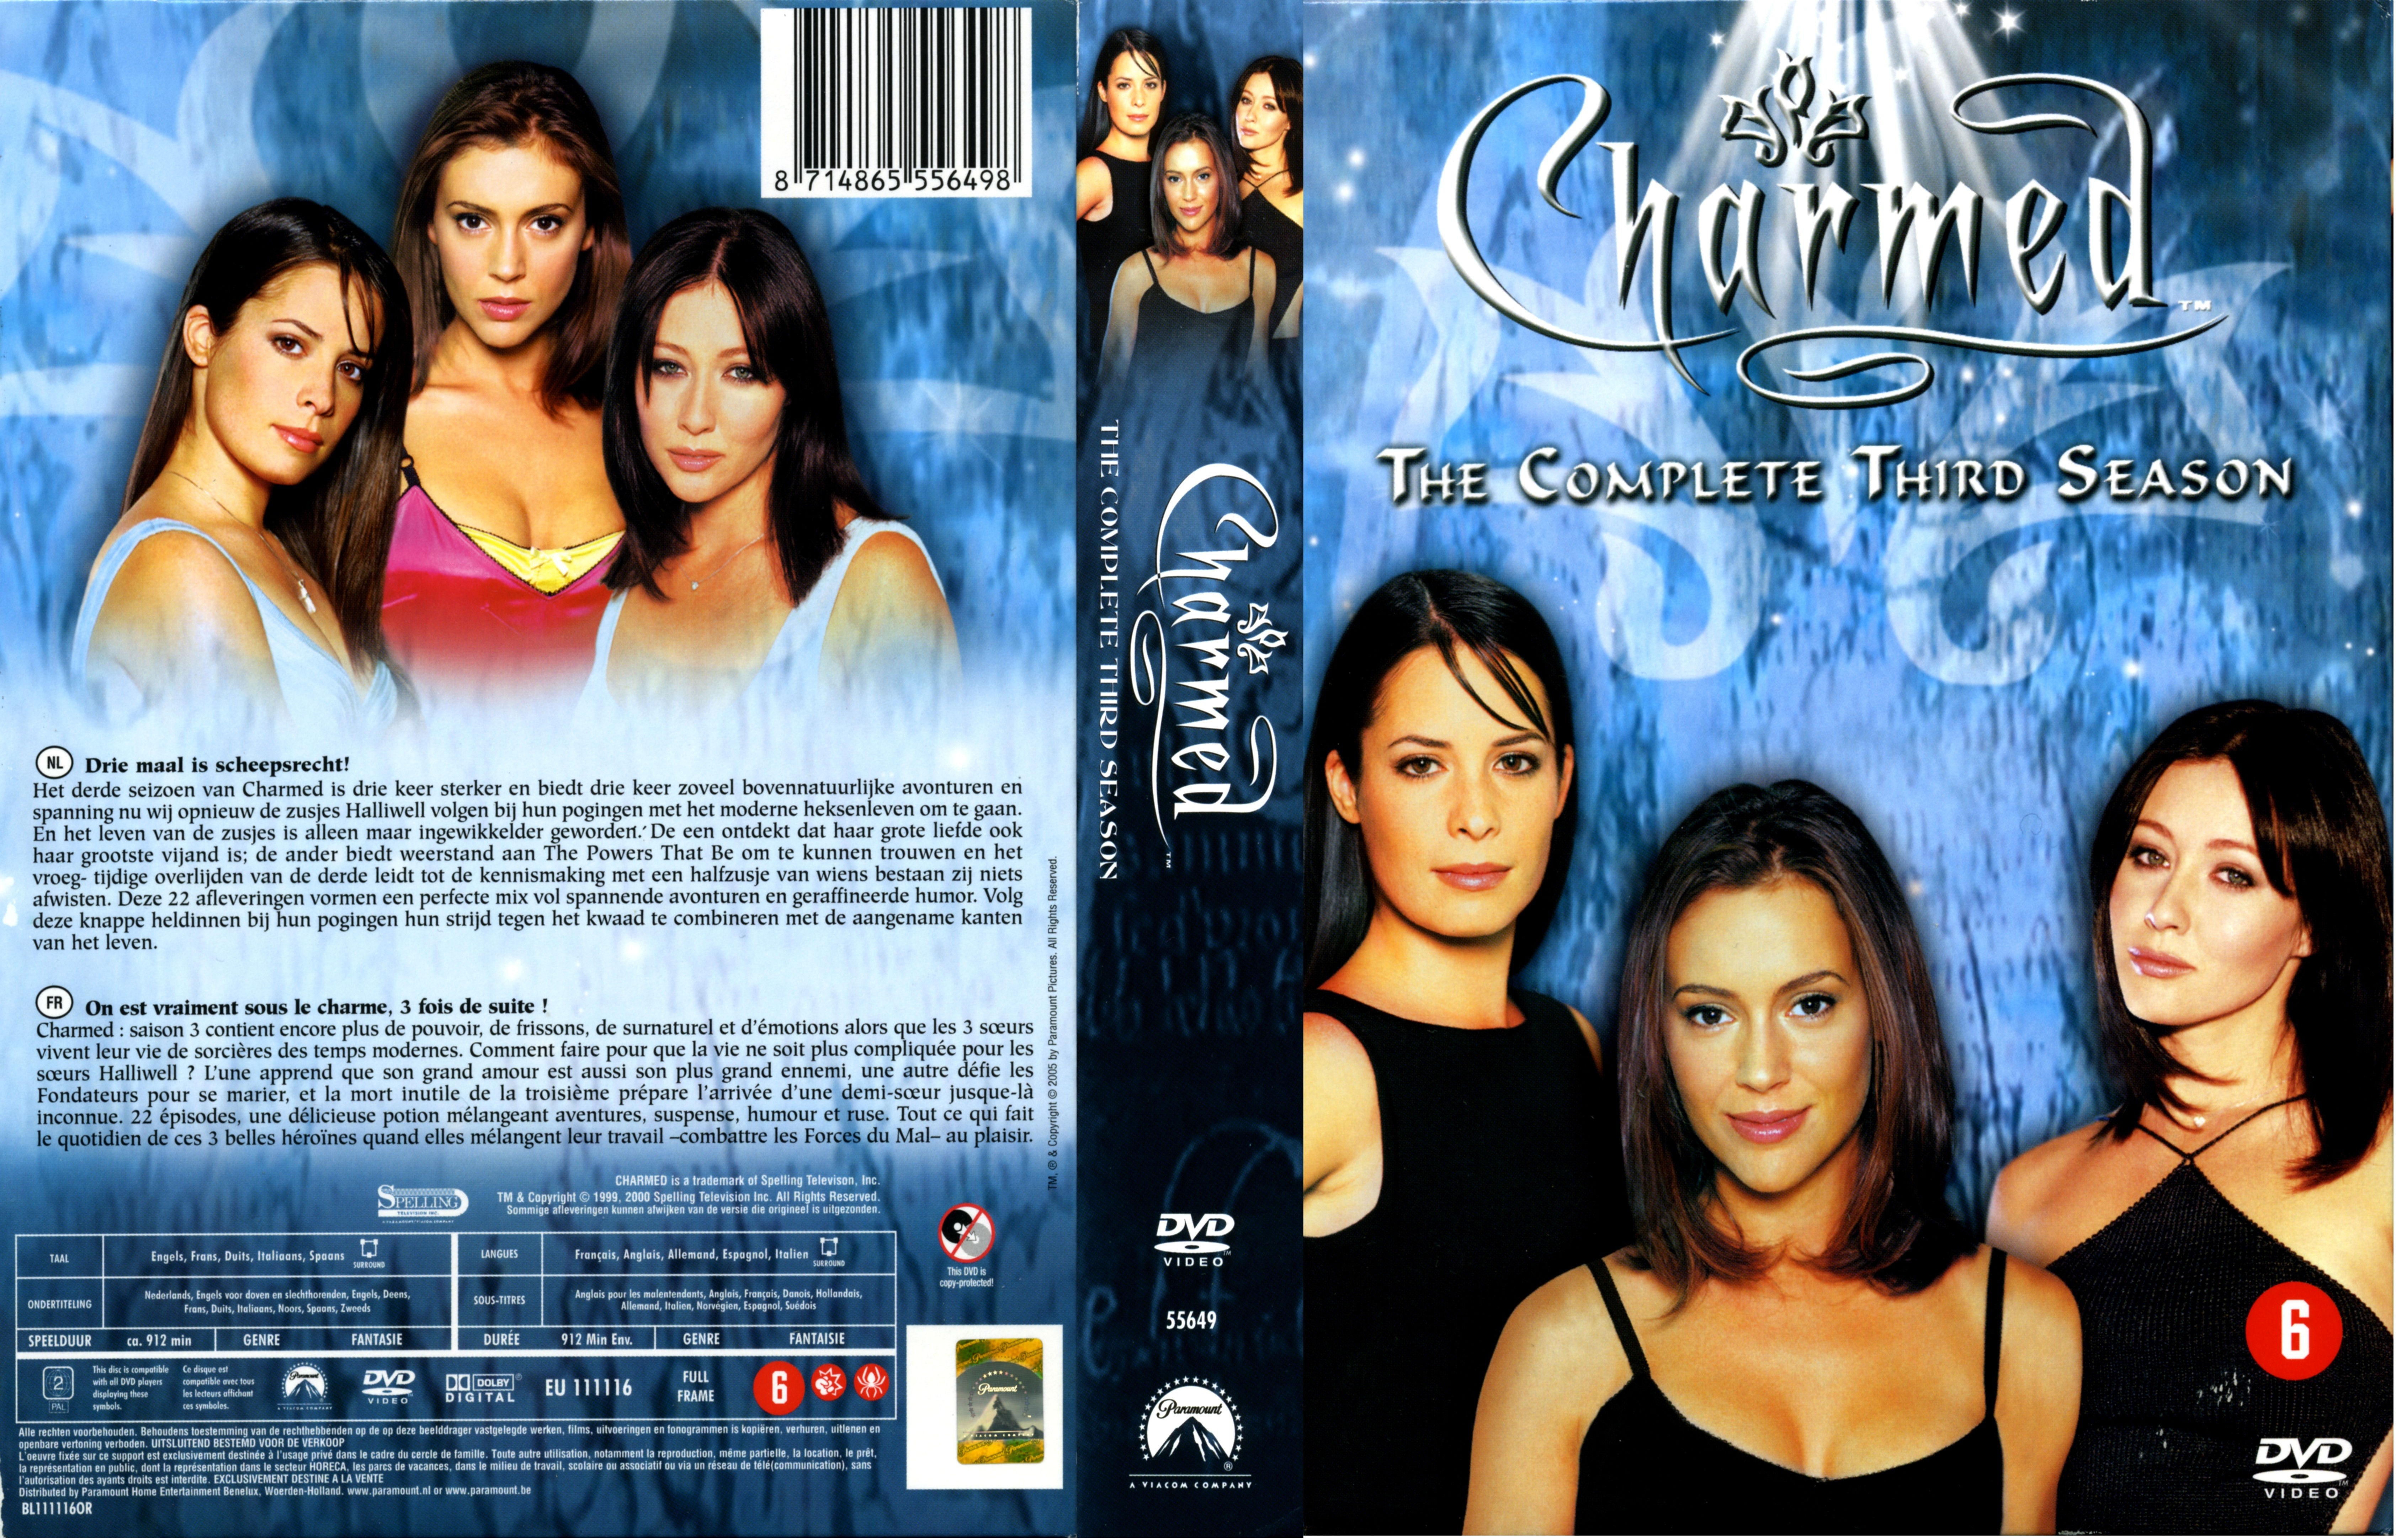 Jaquette DVD Charmed Saison 3 COFFRET